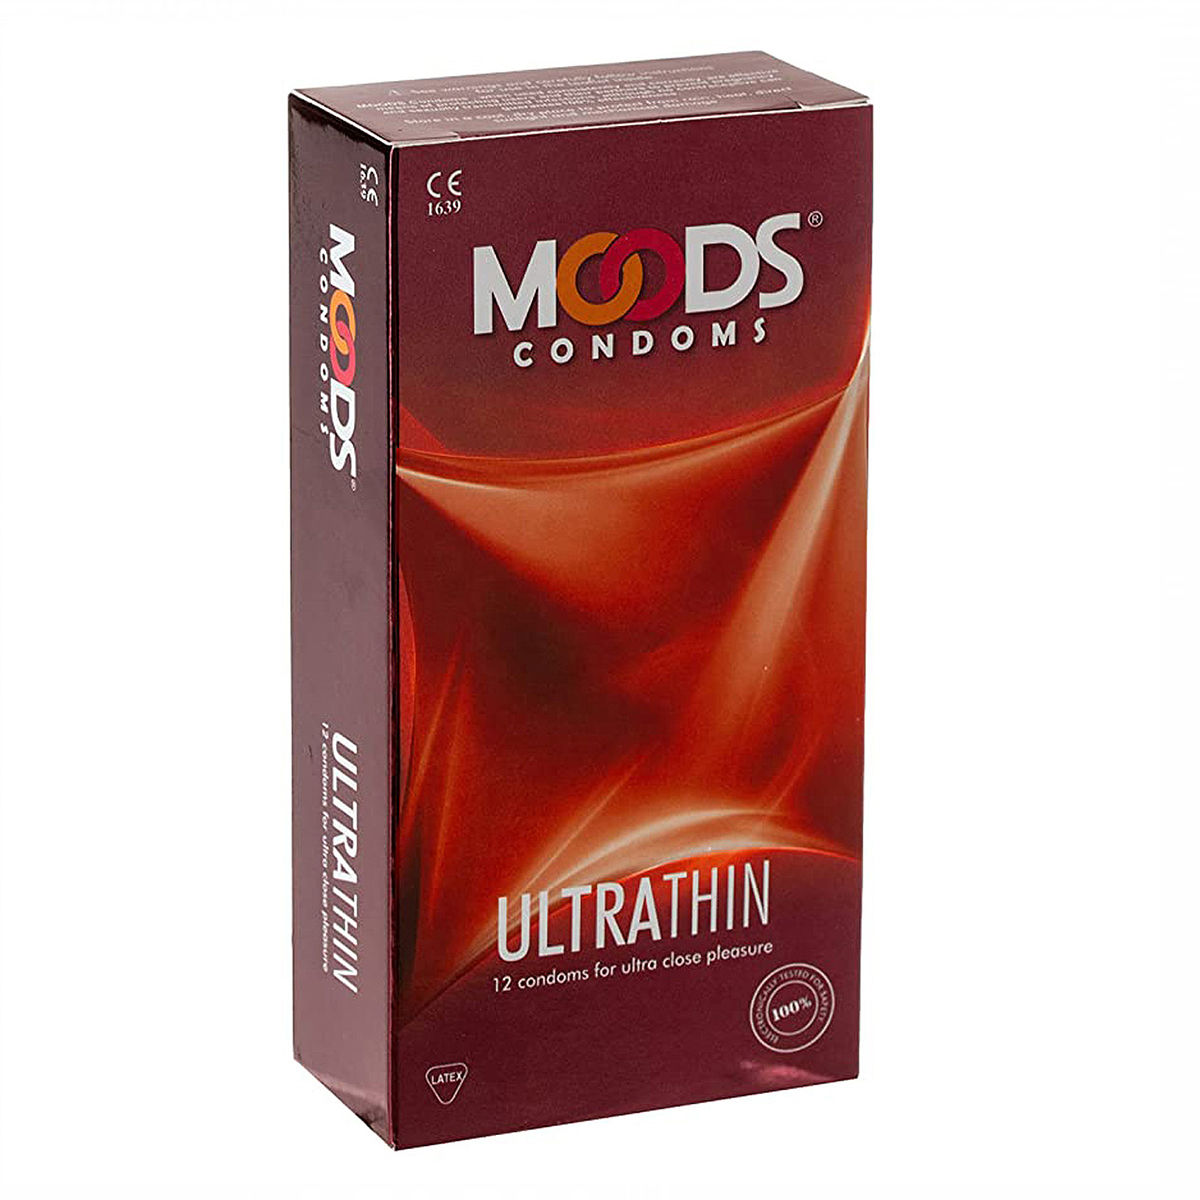 Buy Moods Ultrathin Condoms, 12 Count Online